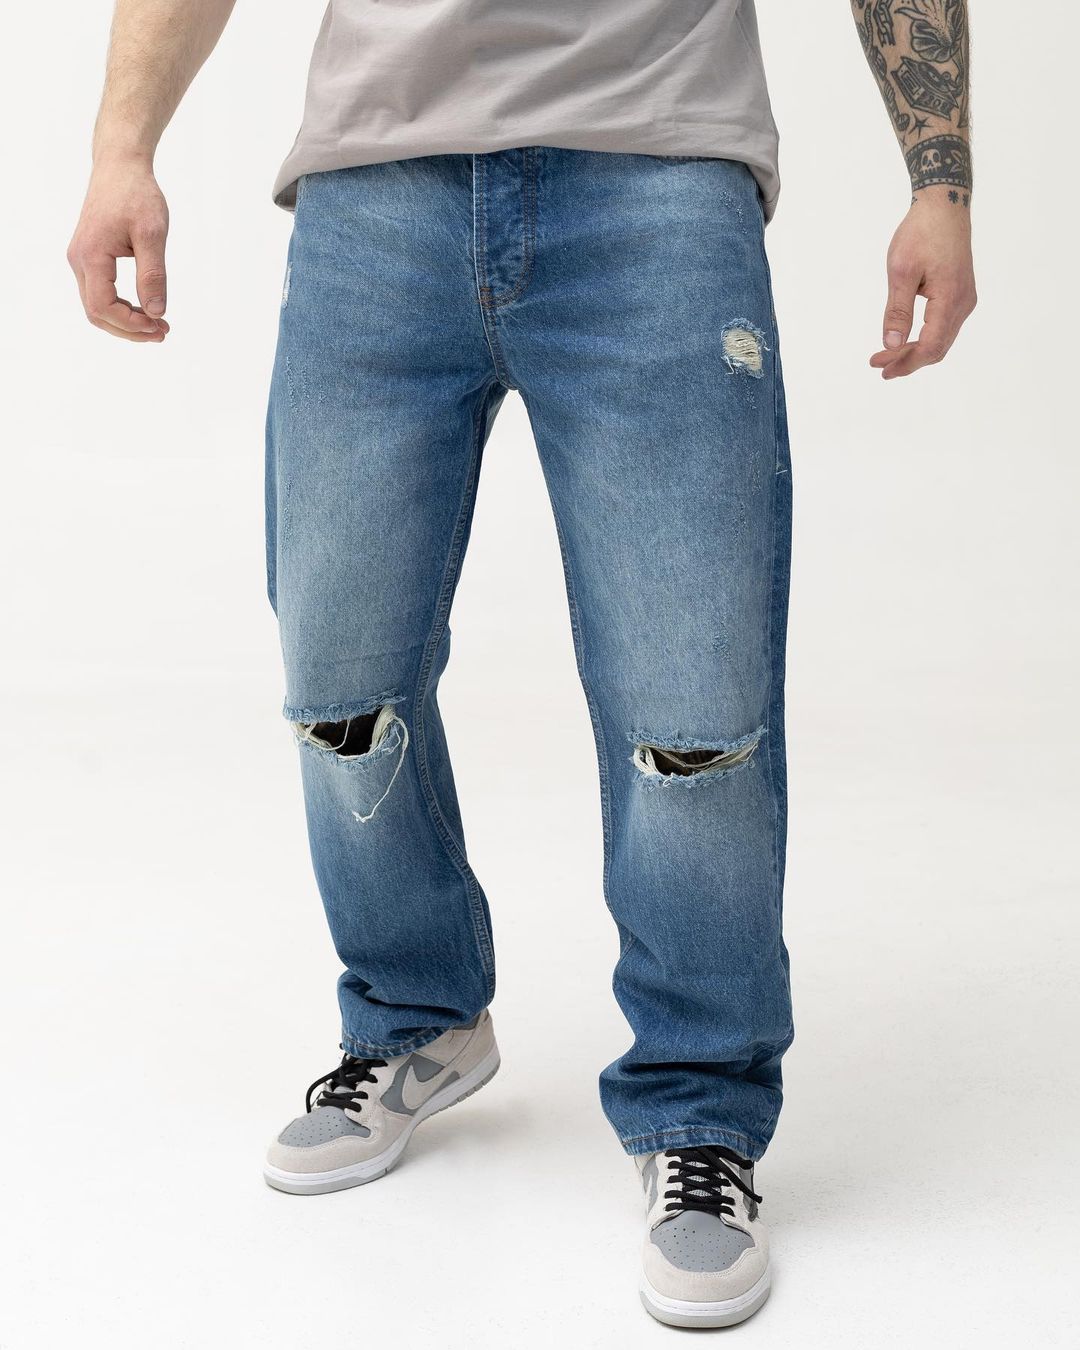 Чоловічі сині джинси BEZET базові рвані - Фото 1